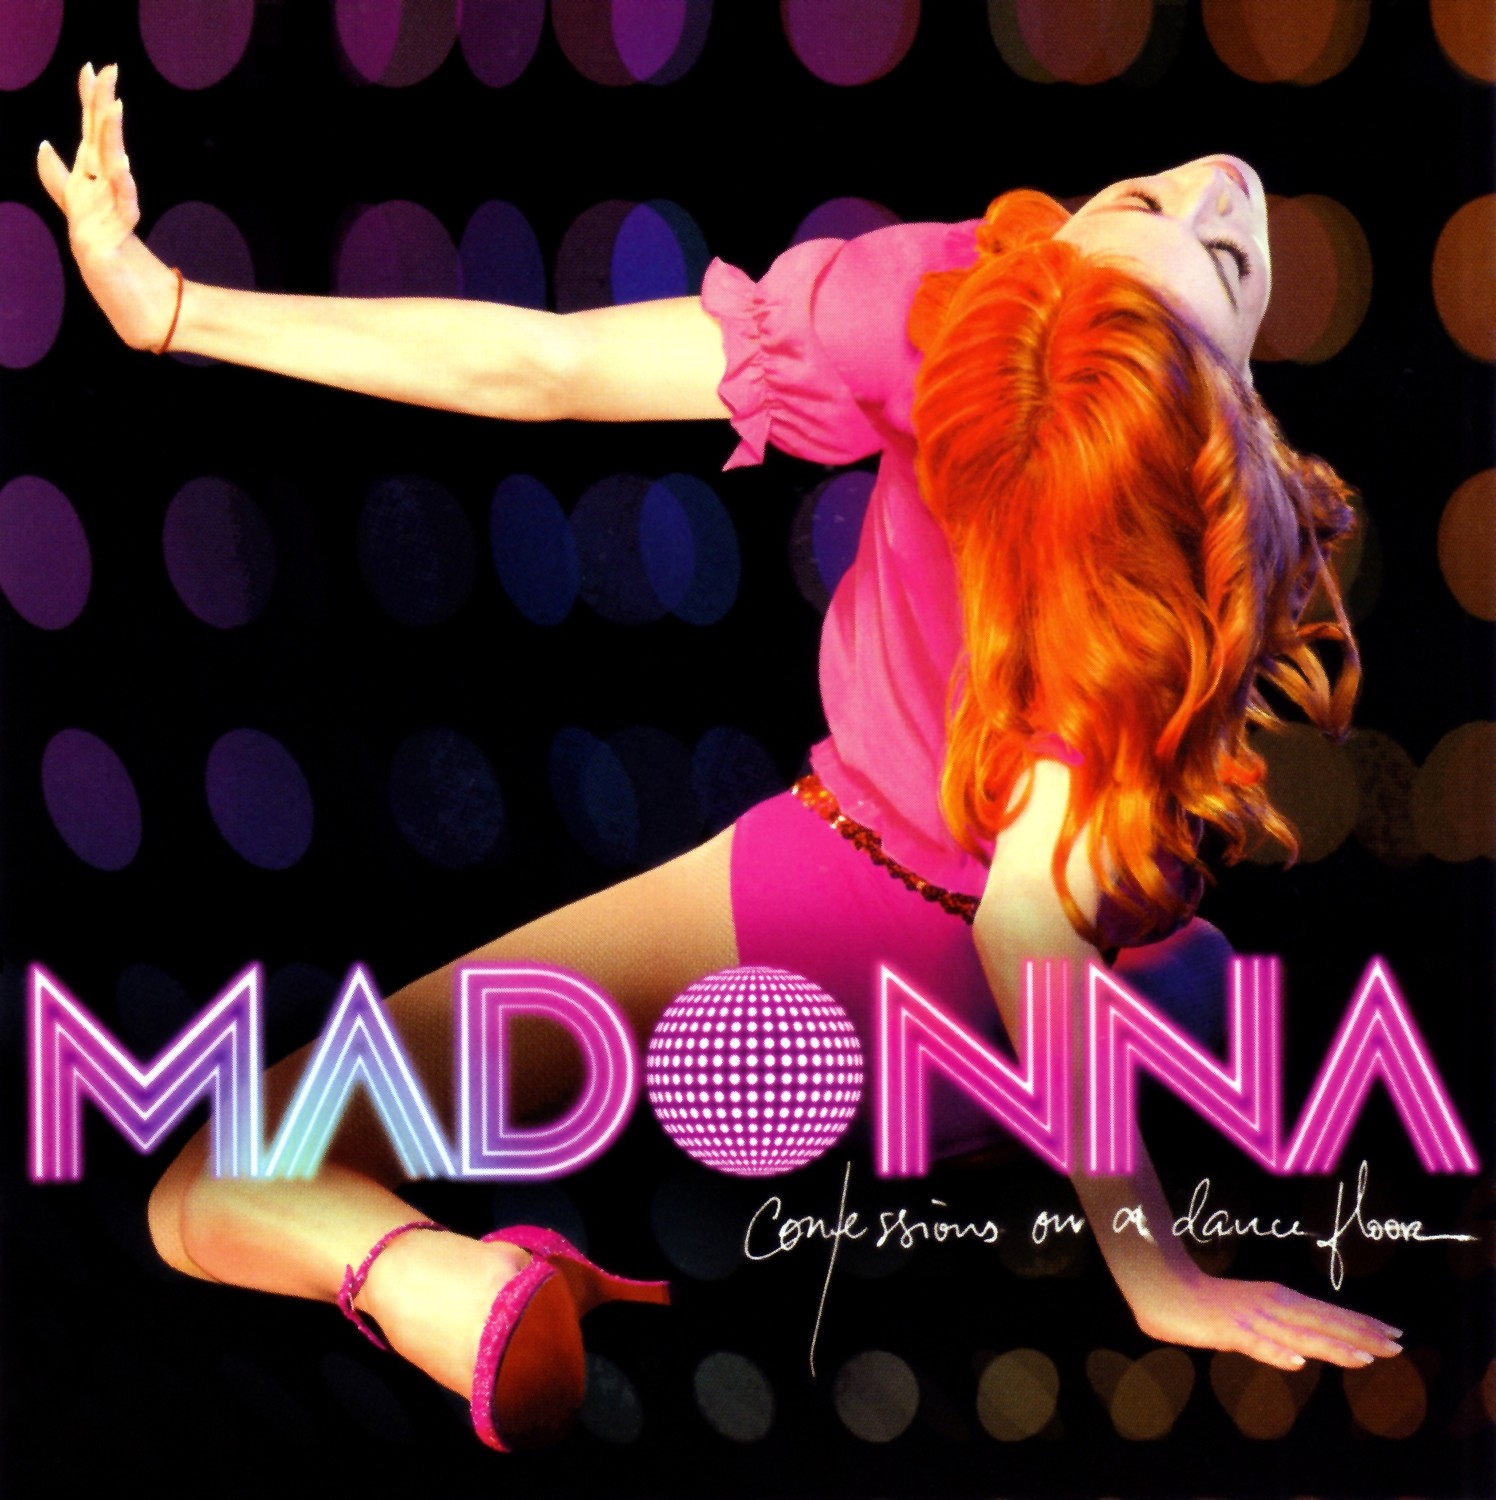 http://4.bp.blogspot.com/_f2iAGRf_Ioo/TIZbO5KstuI/AAAAAAAABTU/B-LlVrucZU4/s1600/Madonna+-+Confessions+on+a+Dancefloor+%5BFront%5D.jpg